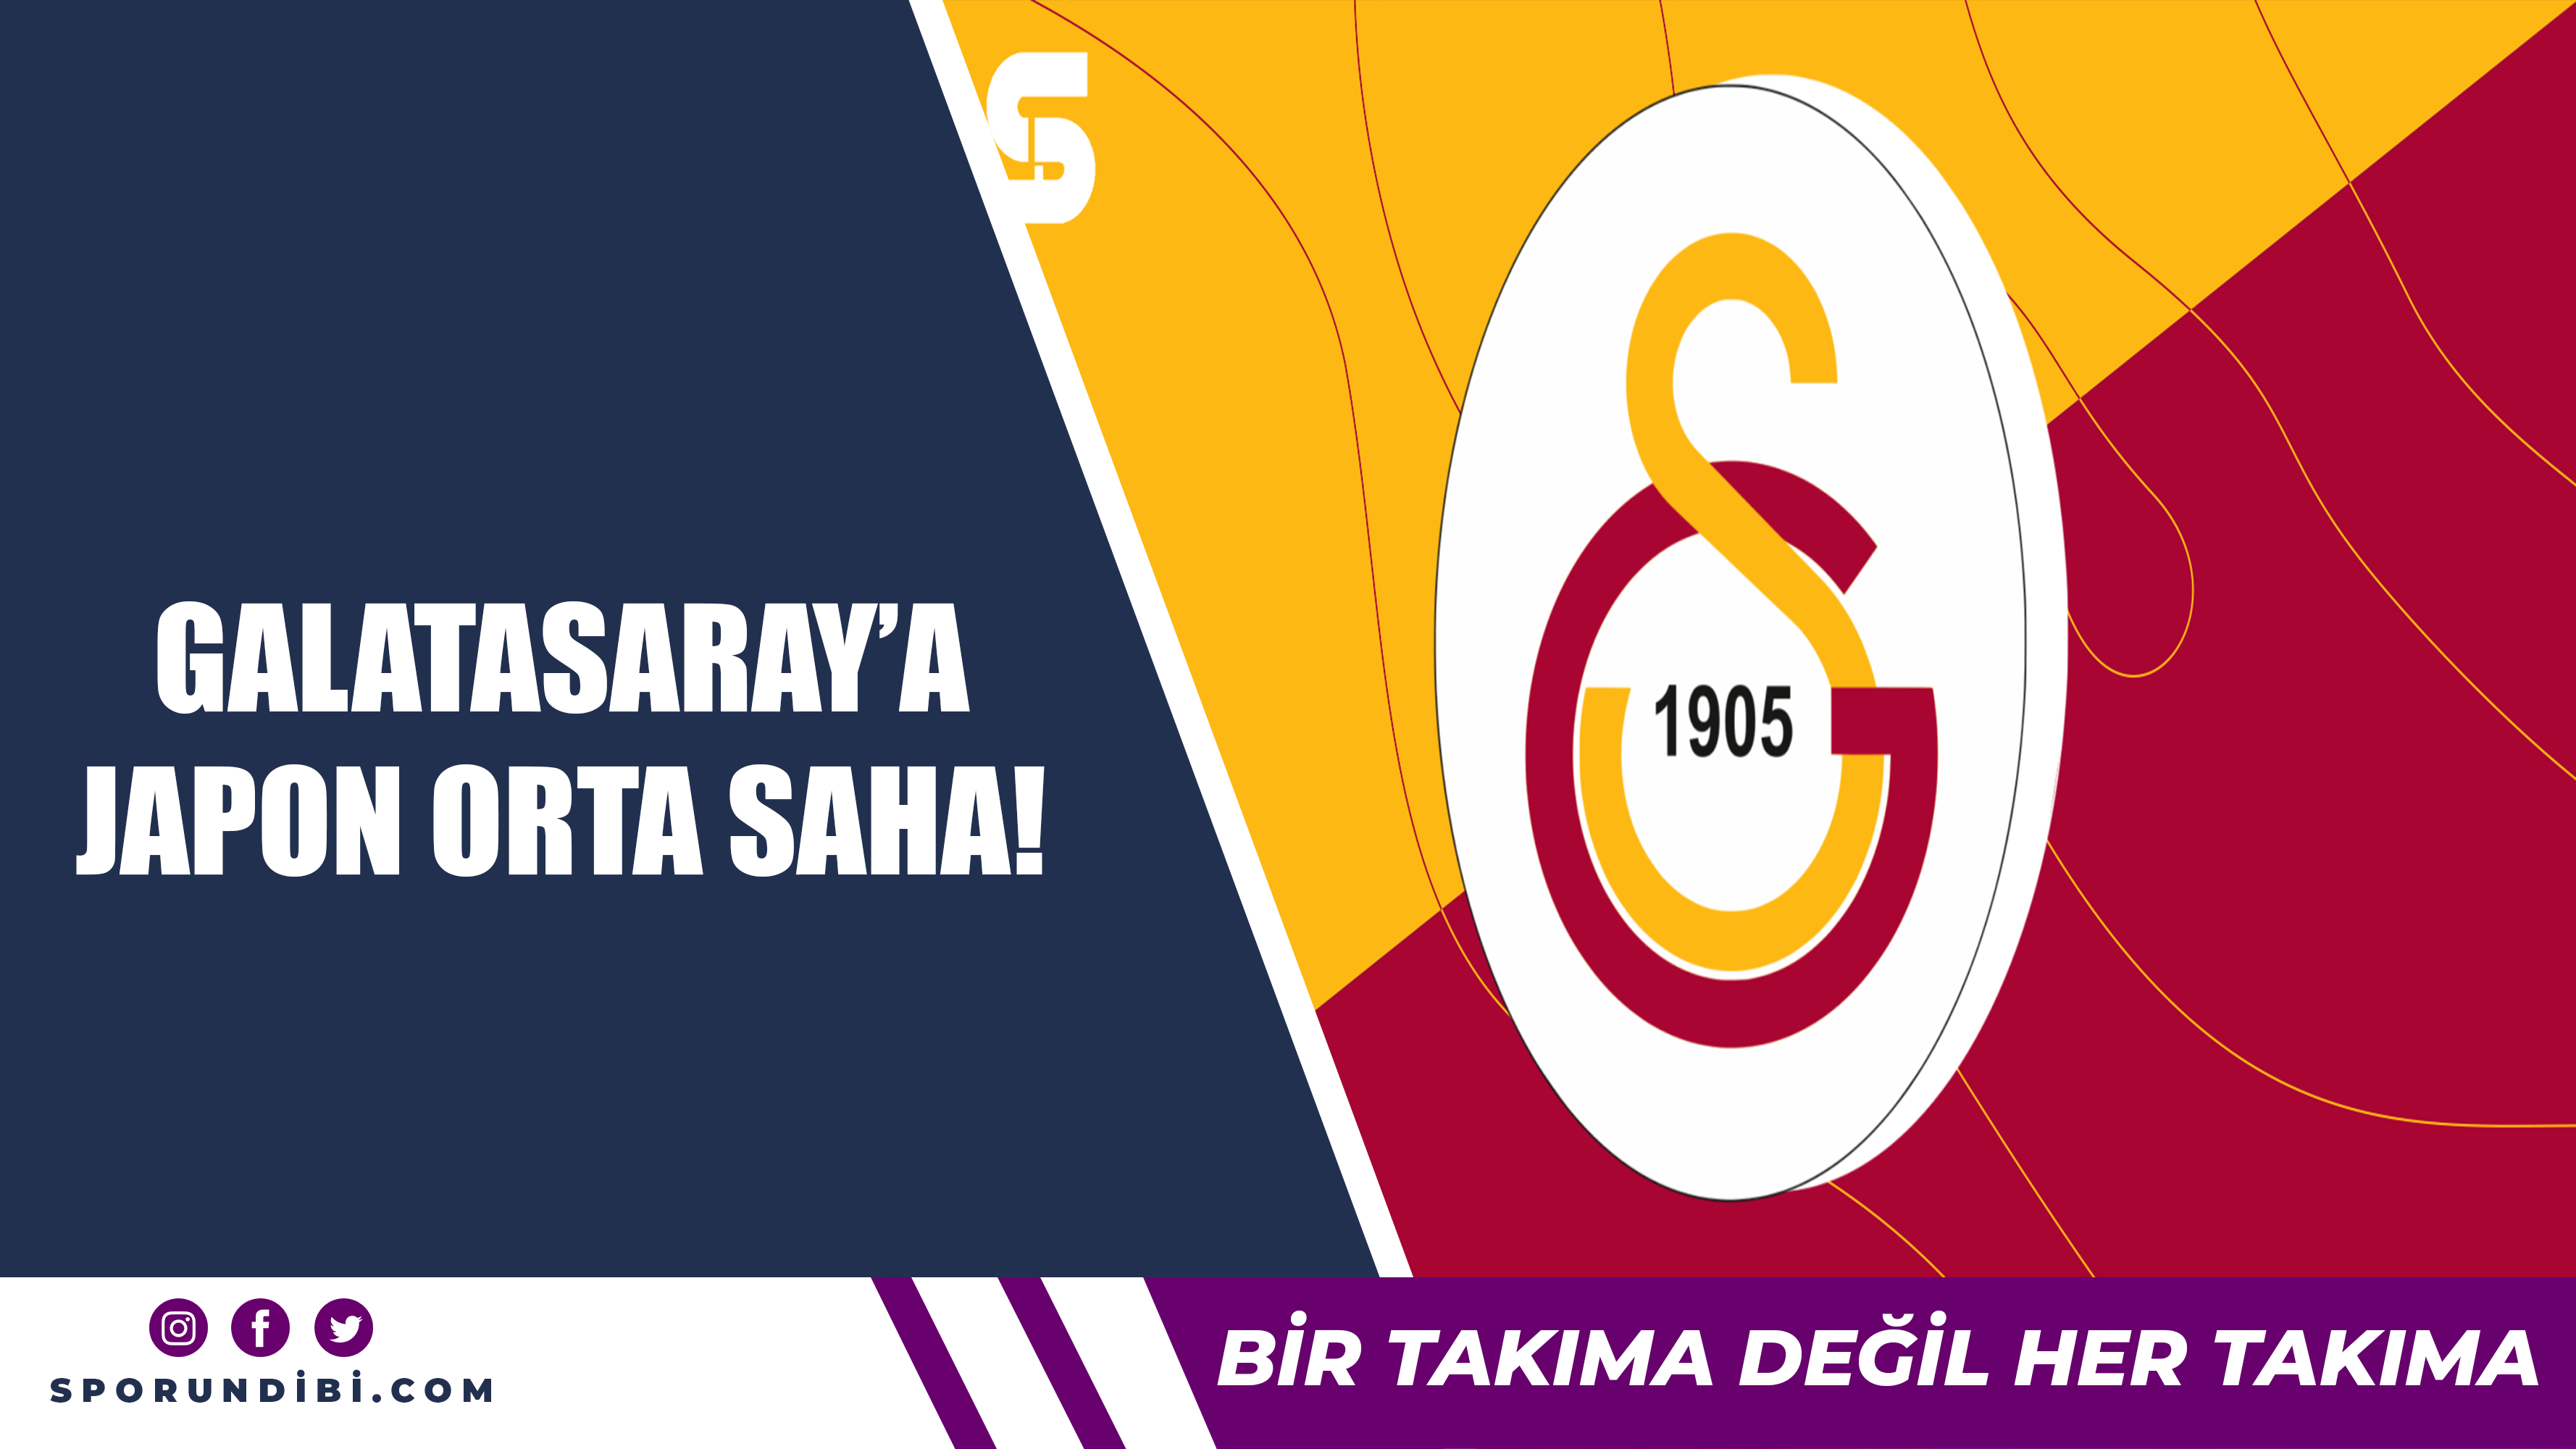 Galatasaray'a Japon orta saha!